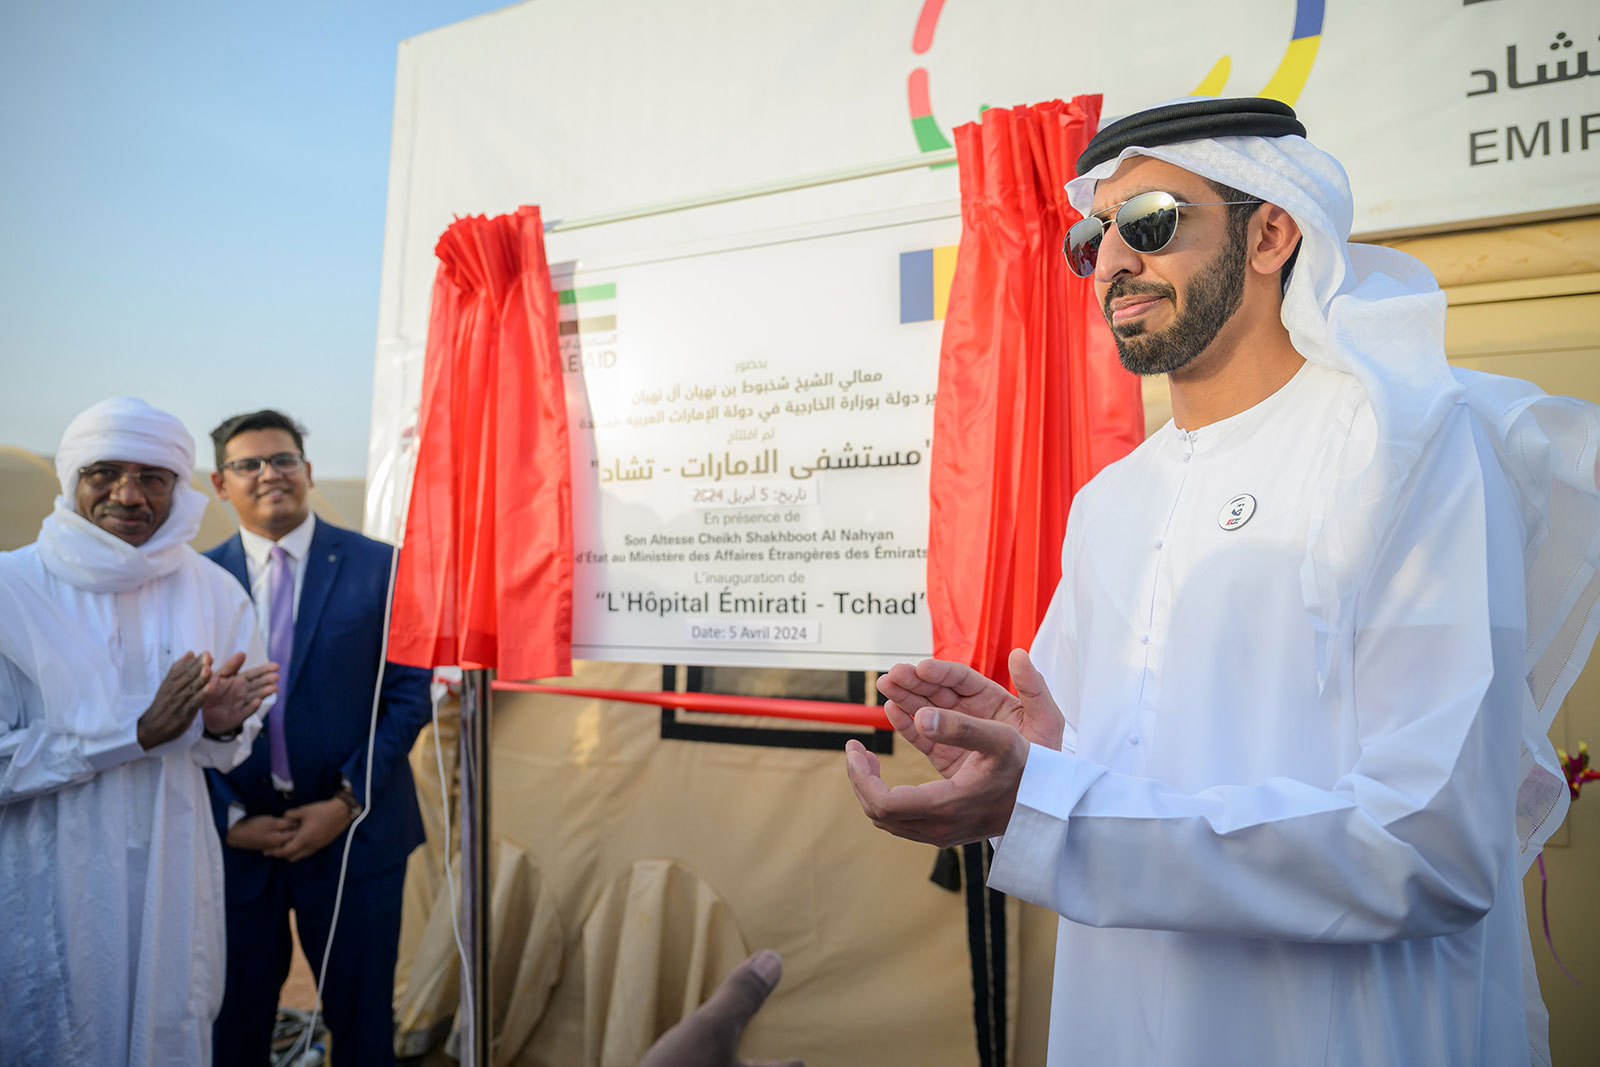 الإمارات تفتتح المستشفى الميداني المتكامل في تشاد لدعم الأشقاء اللاجئين السودانيين | المحقق الأوروبي